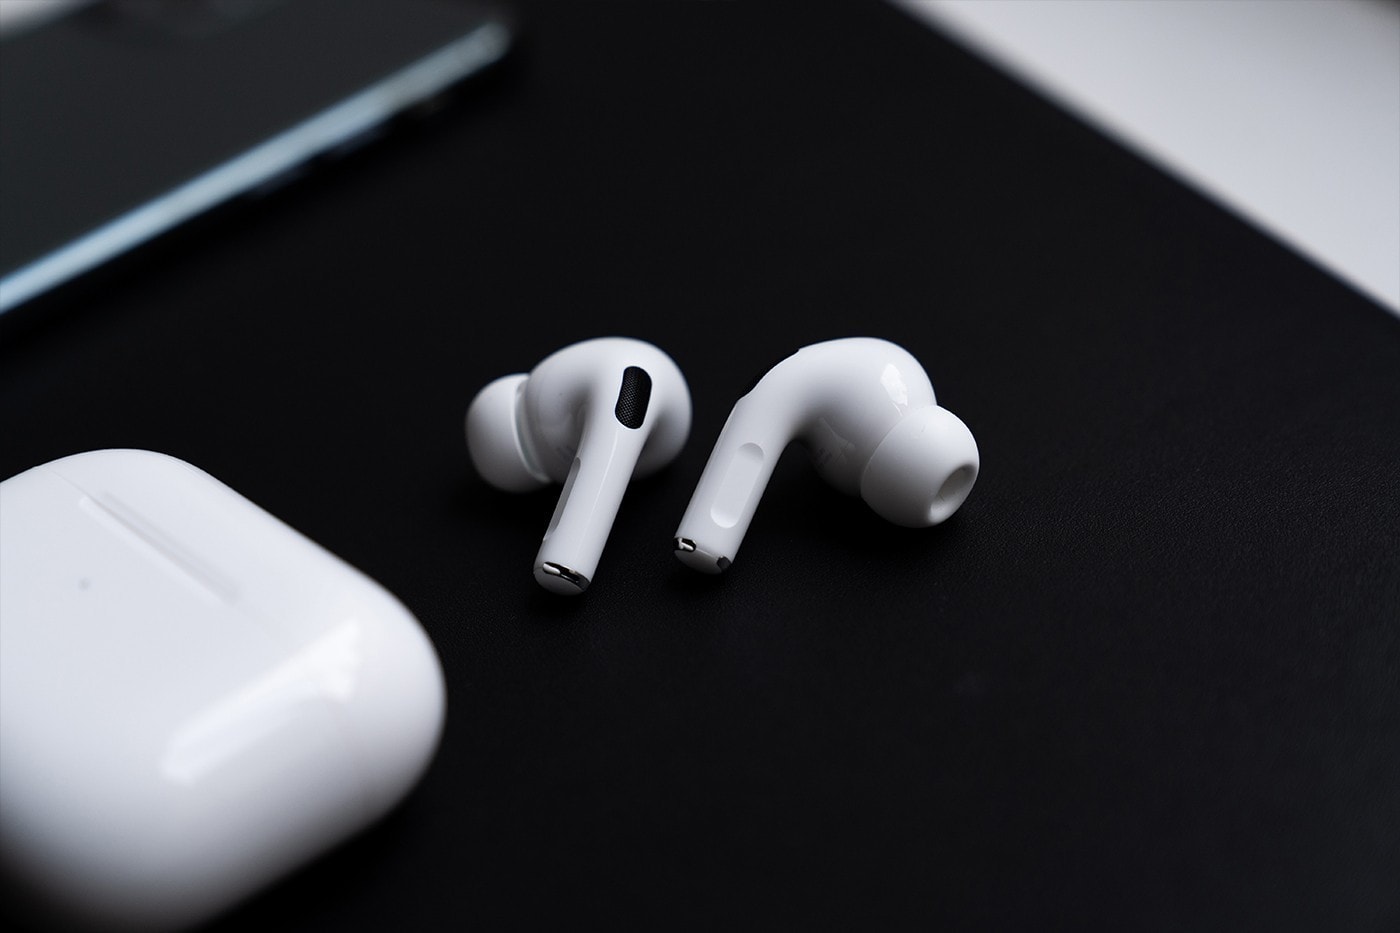 報導稱 Apple 全新版本「AirPods Pro Lite」耳機有望於 2020 年中推出